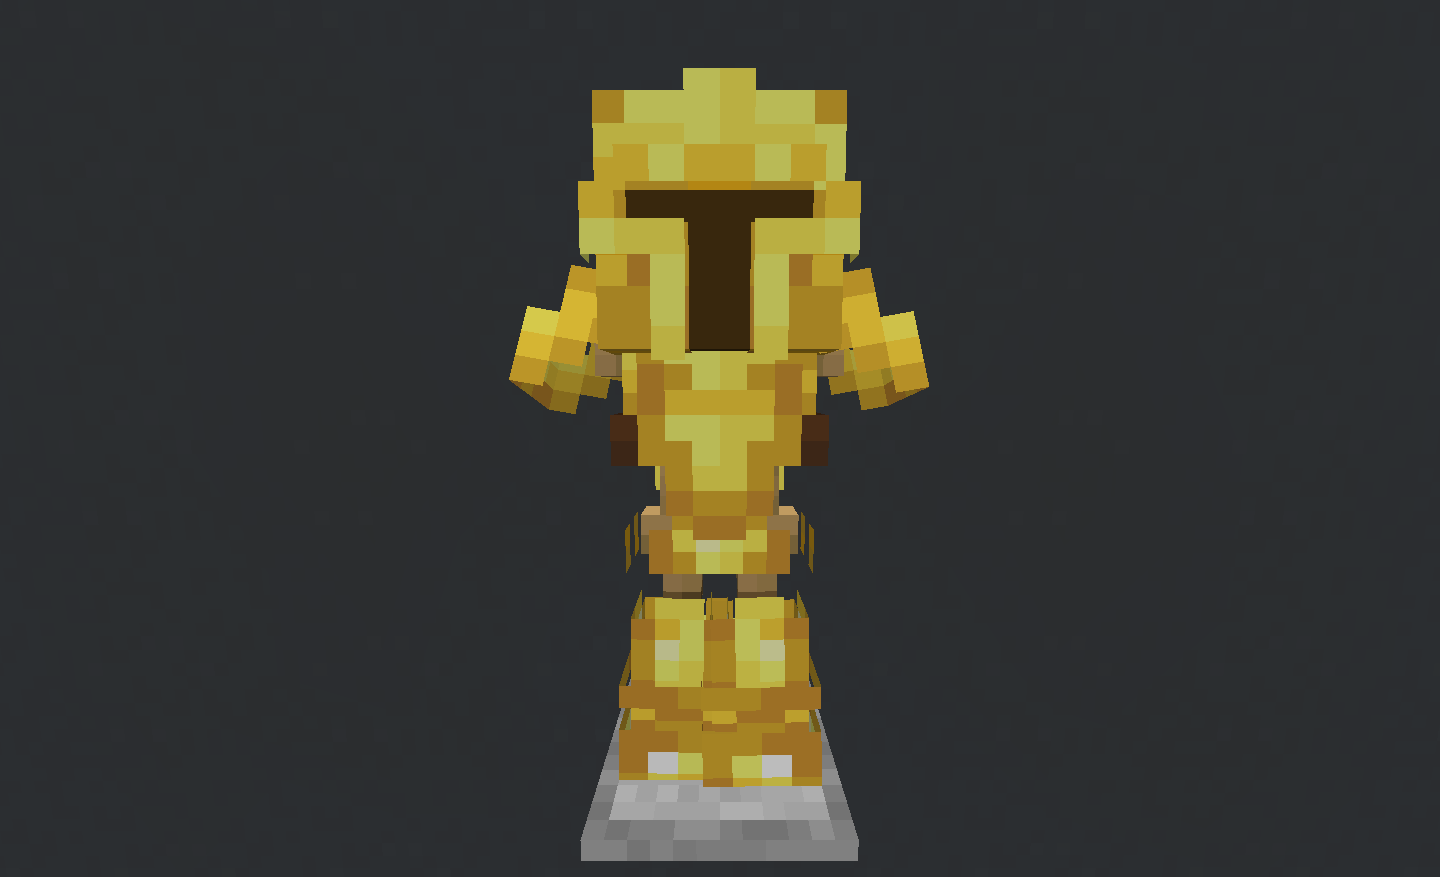 Golden armor